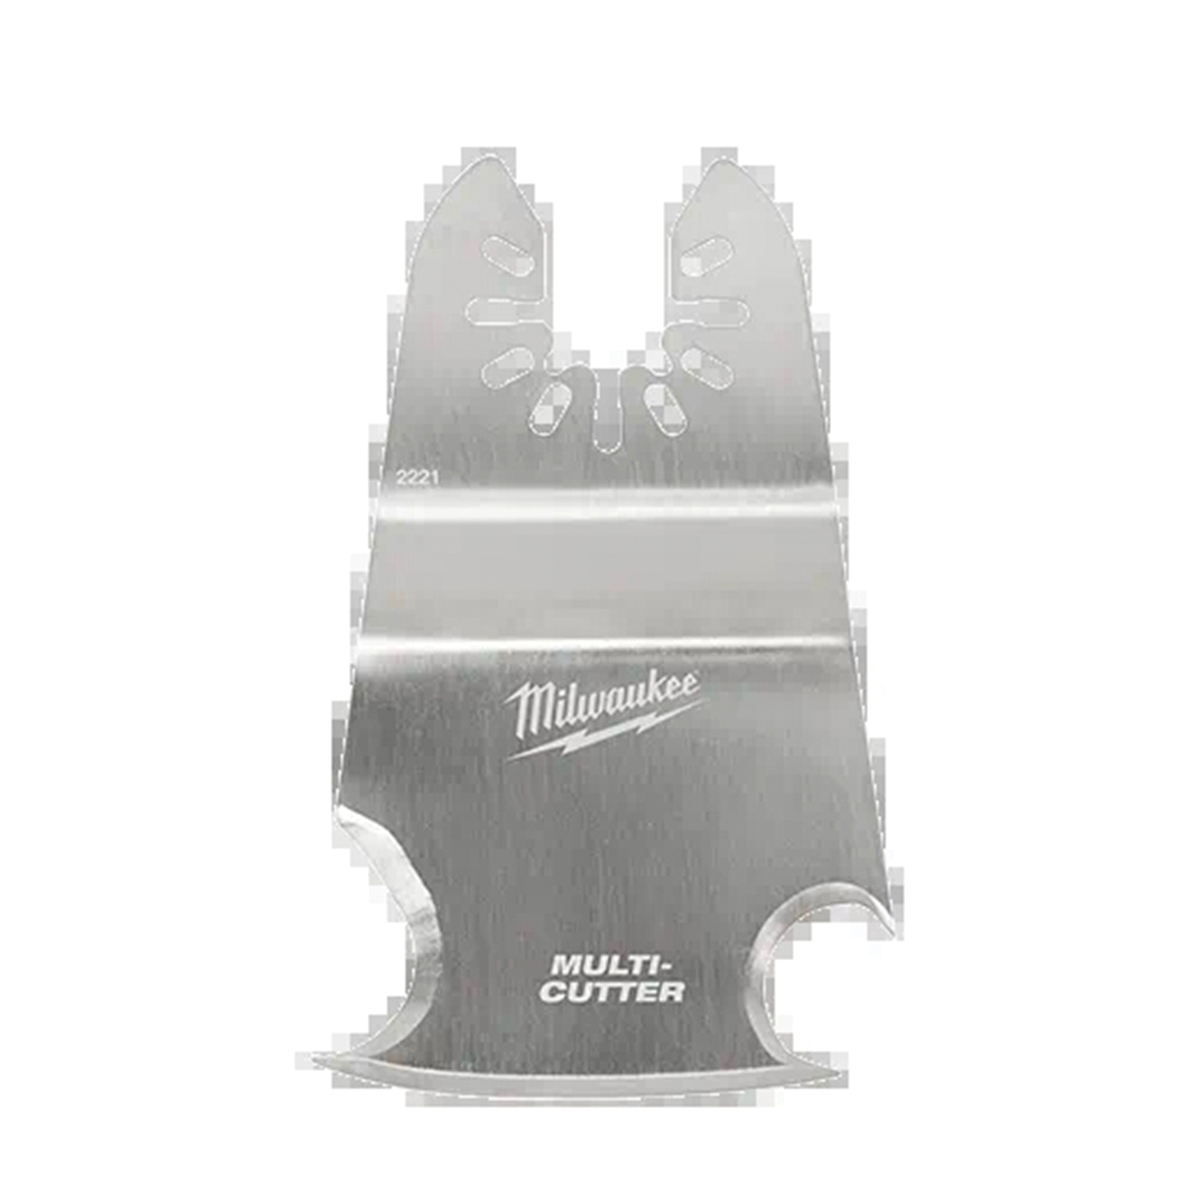 49-25-2221 3-in-1 Multi-Cutter Scraper Blade, 2 in, 1-5/8 in D Cutting, Stainless Steel